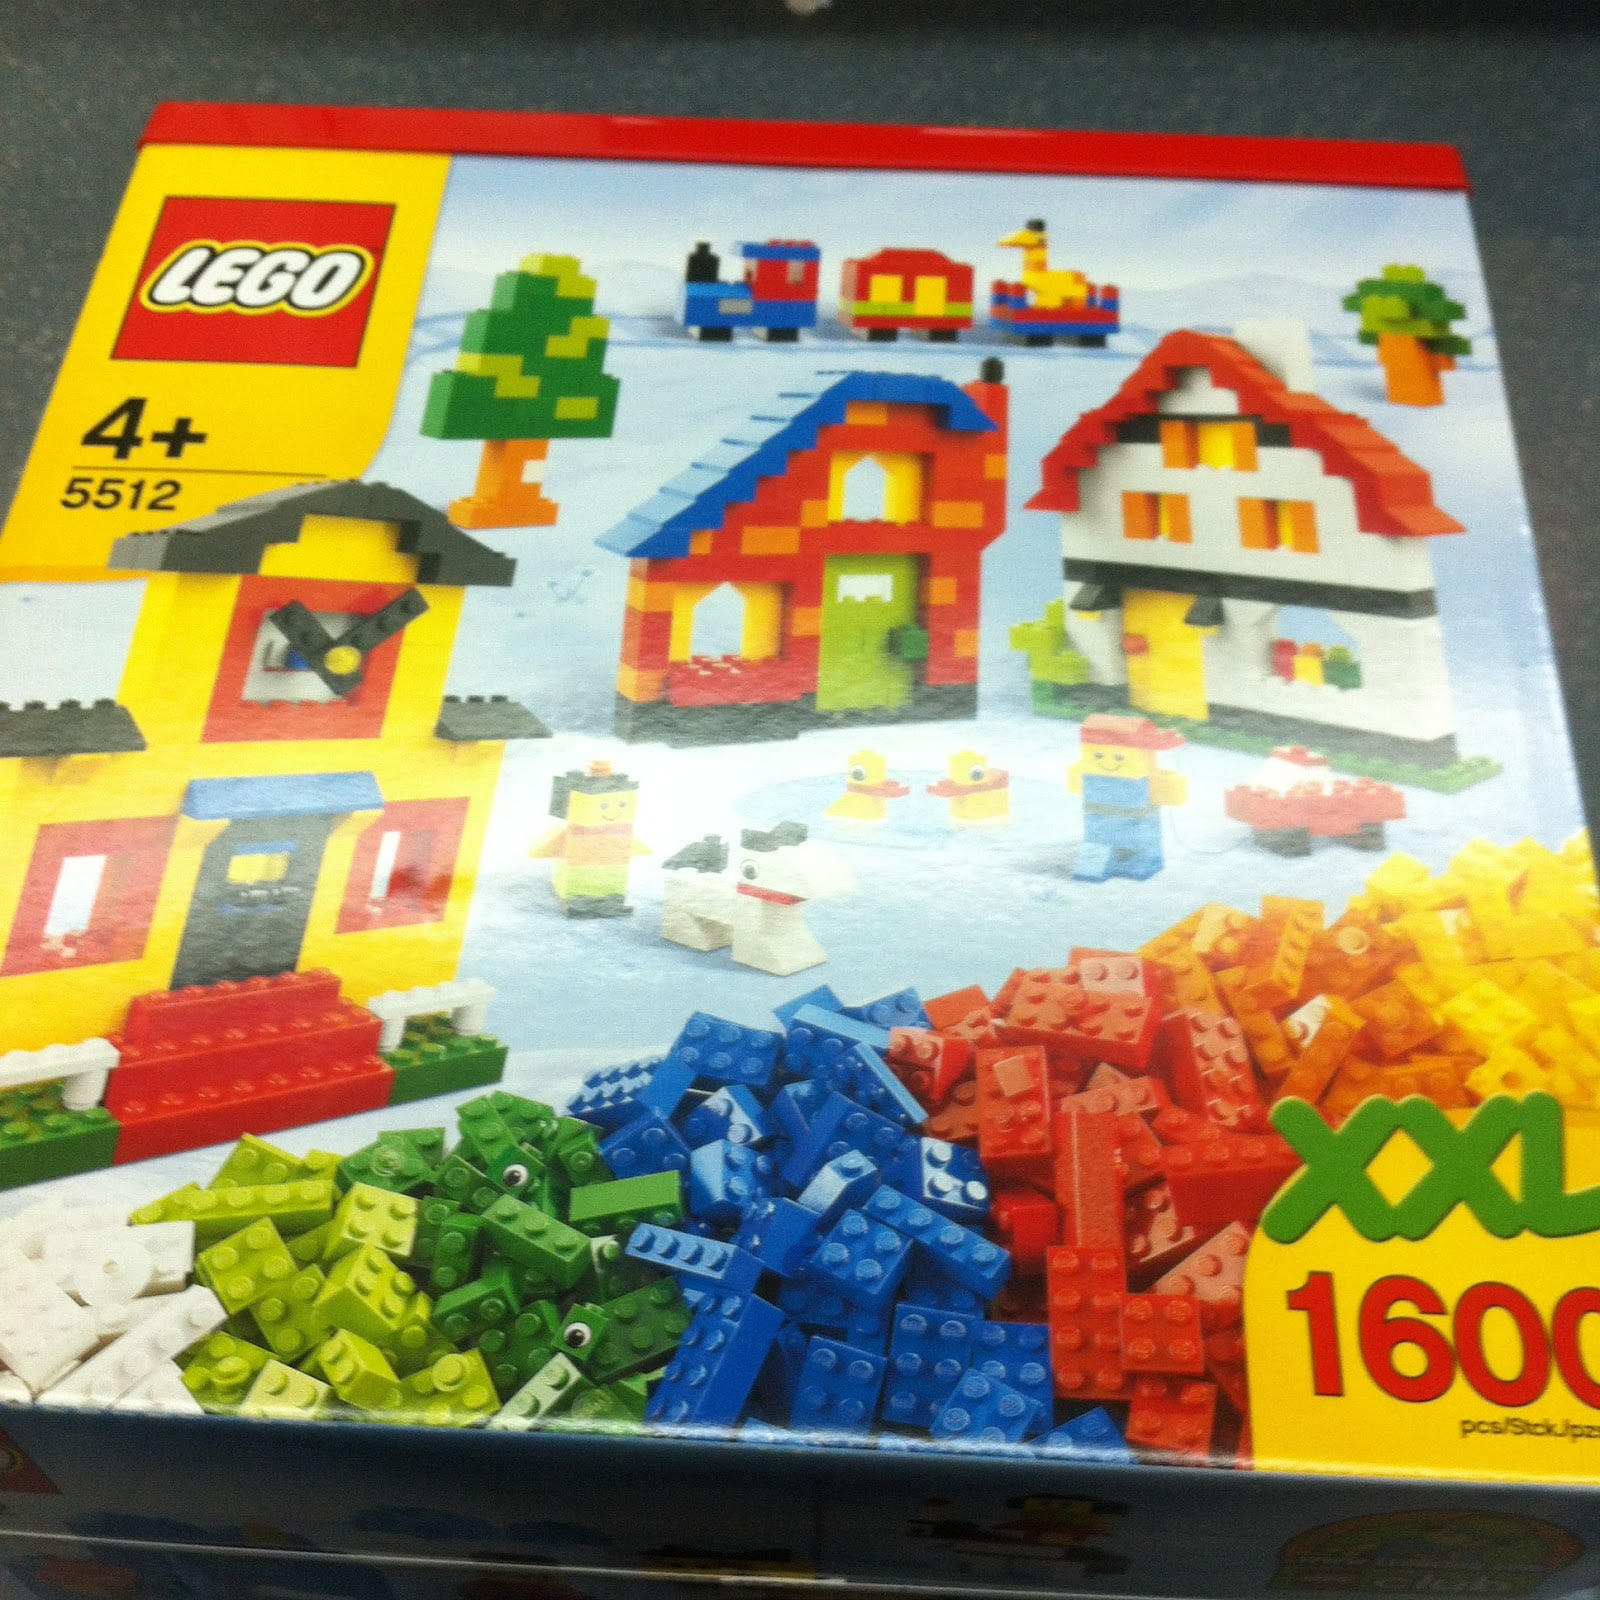 Lego box used